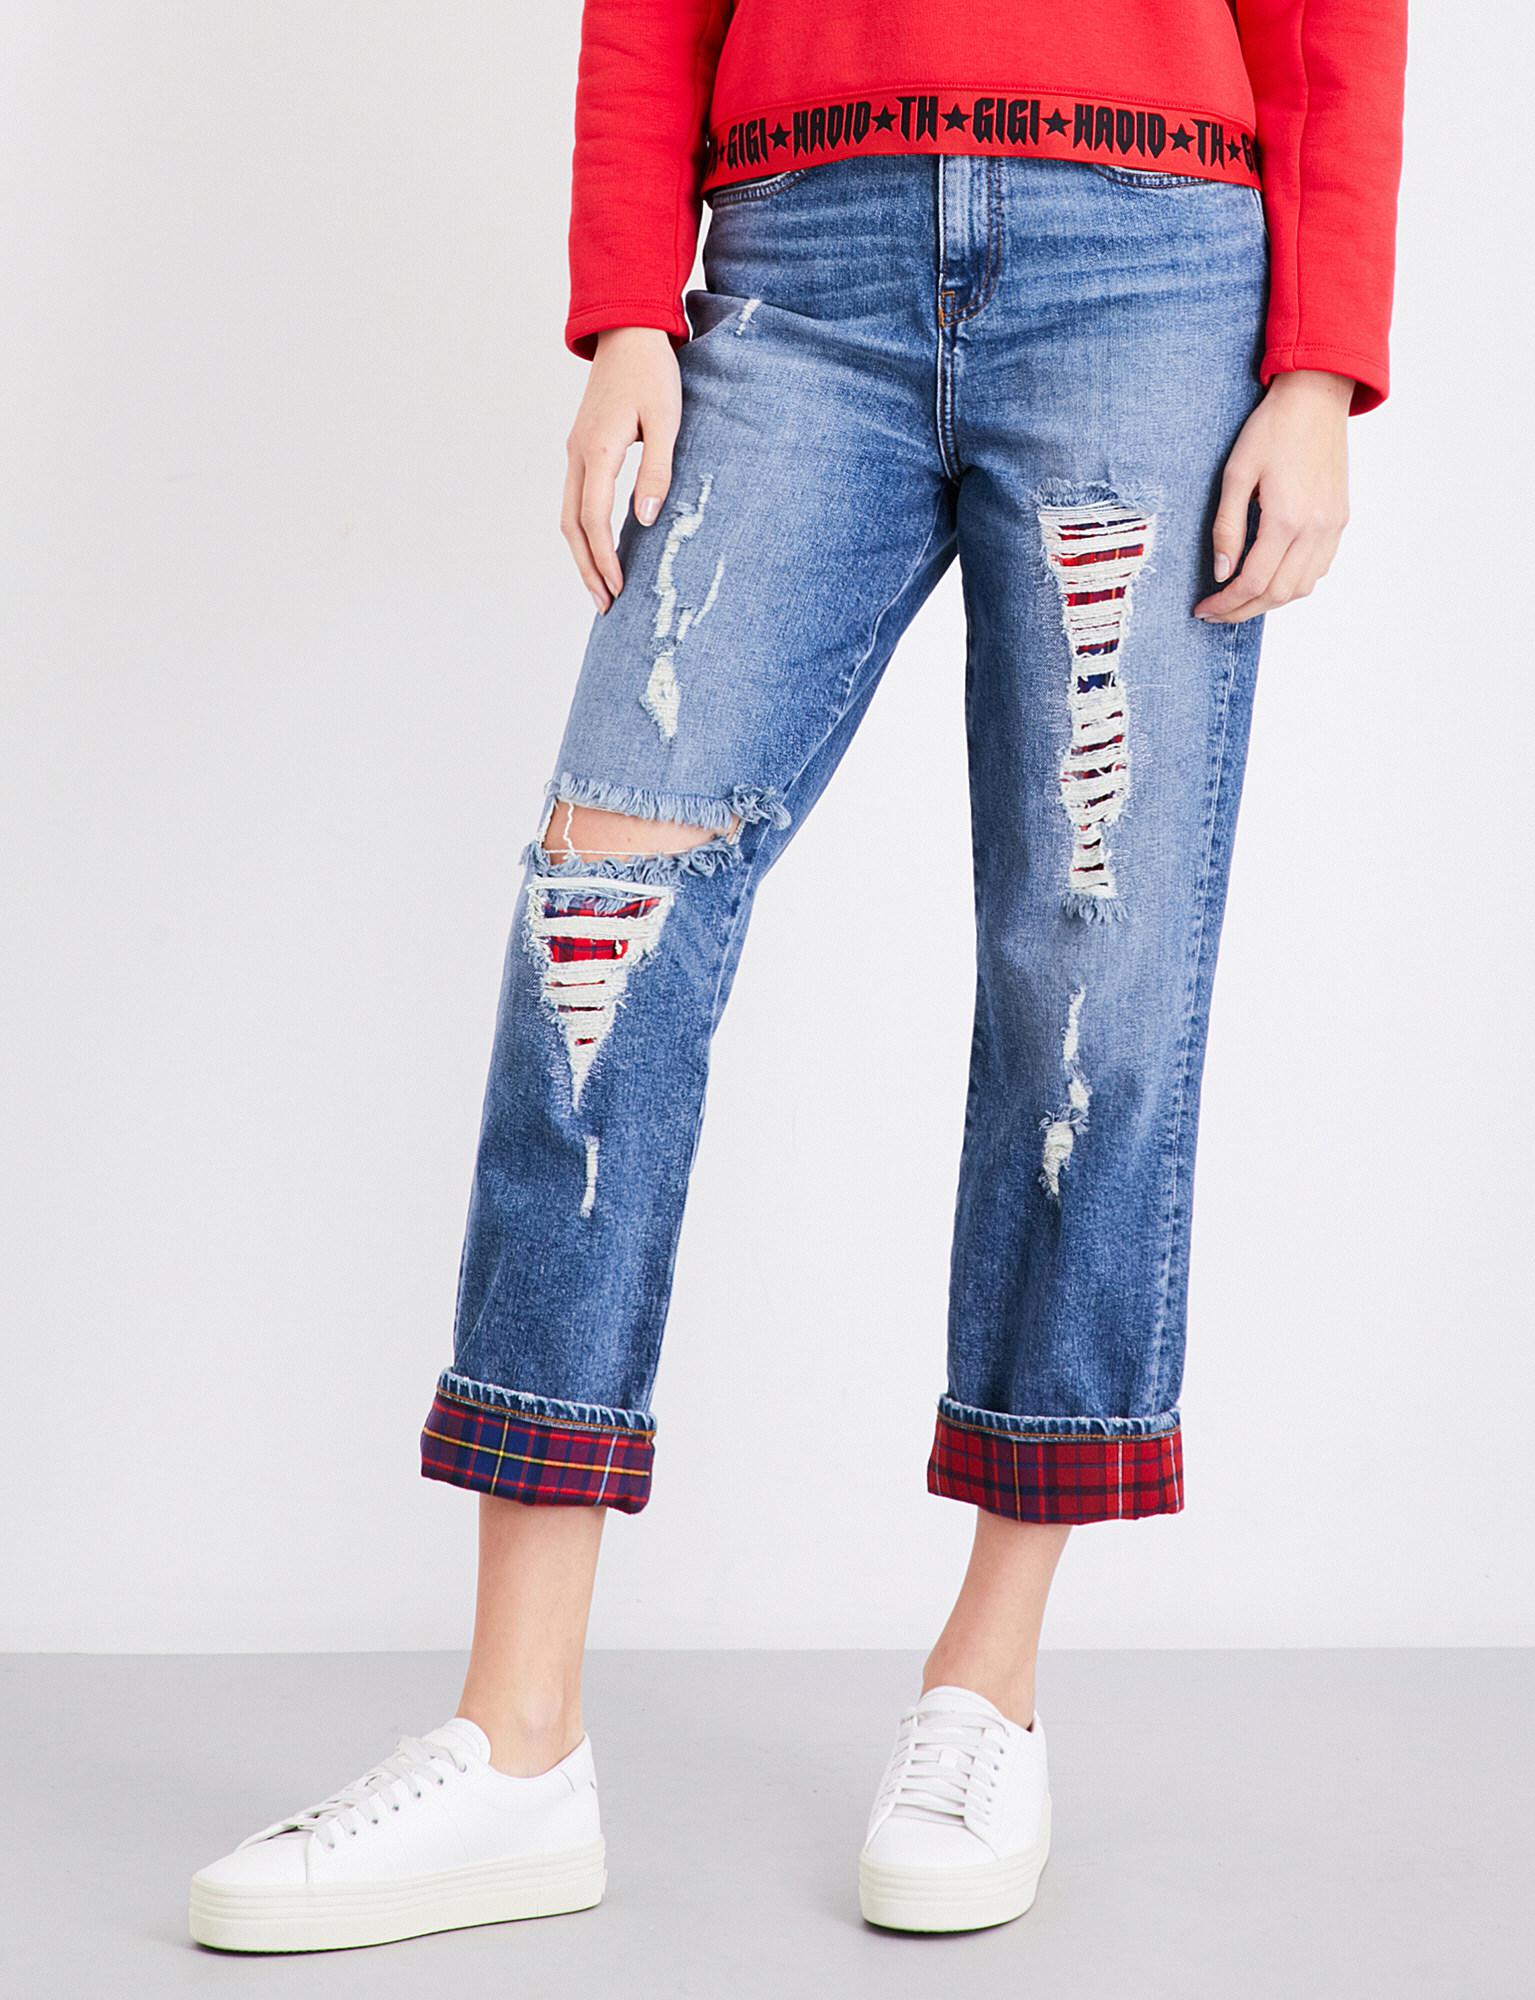 hilfiger high waist jeans